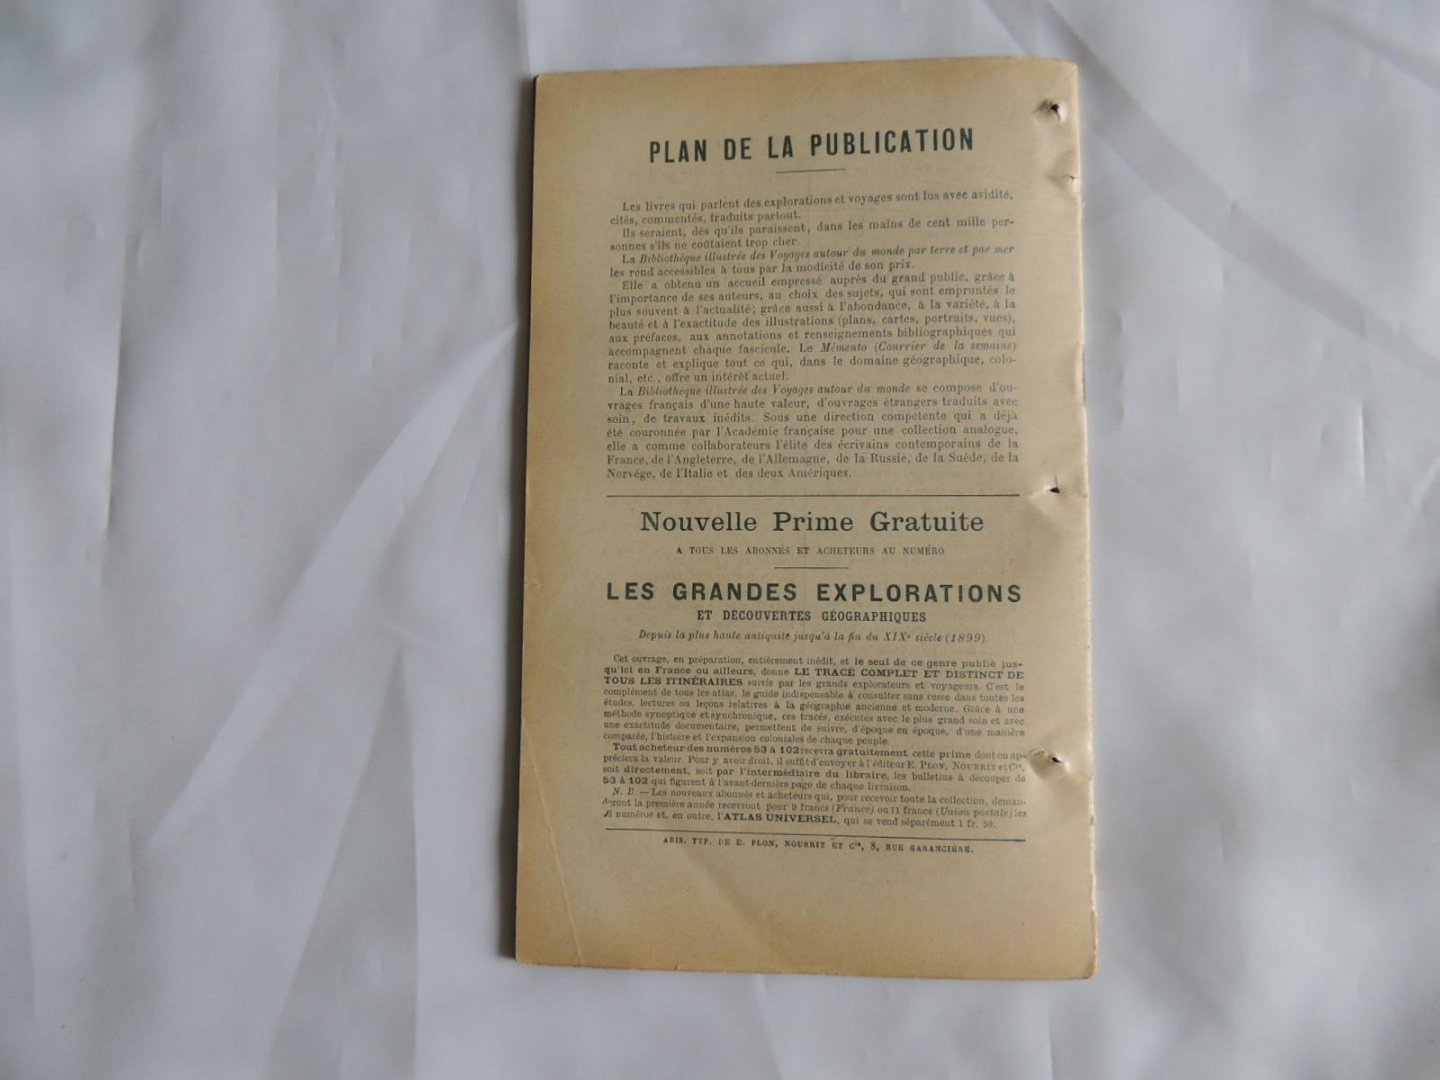 Comte Goblet d' Alviella - Le Sahara algerien . N° 63  de la Bibliothèque illustrée Bibliotheque illustree des voyages autour du monde par terre et par mer